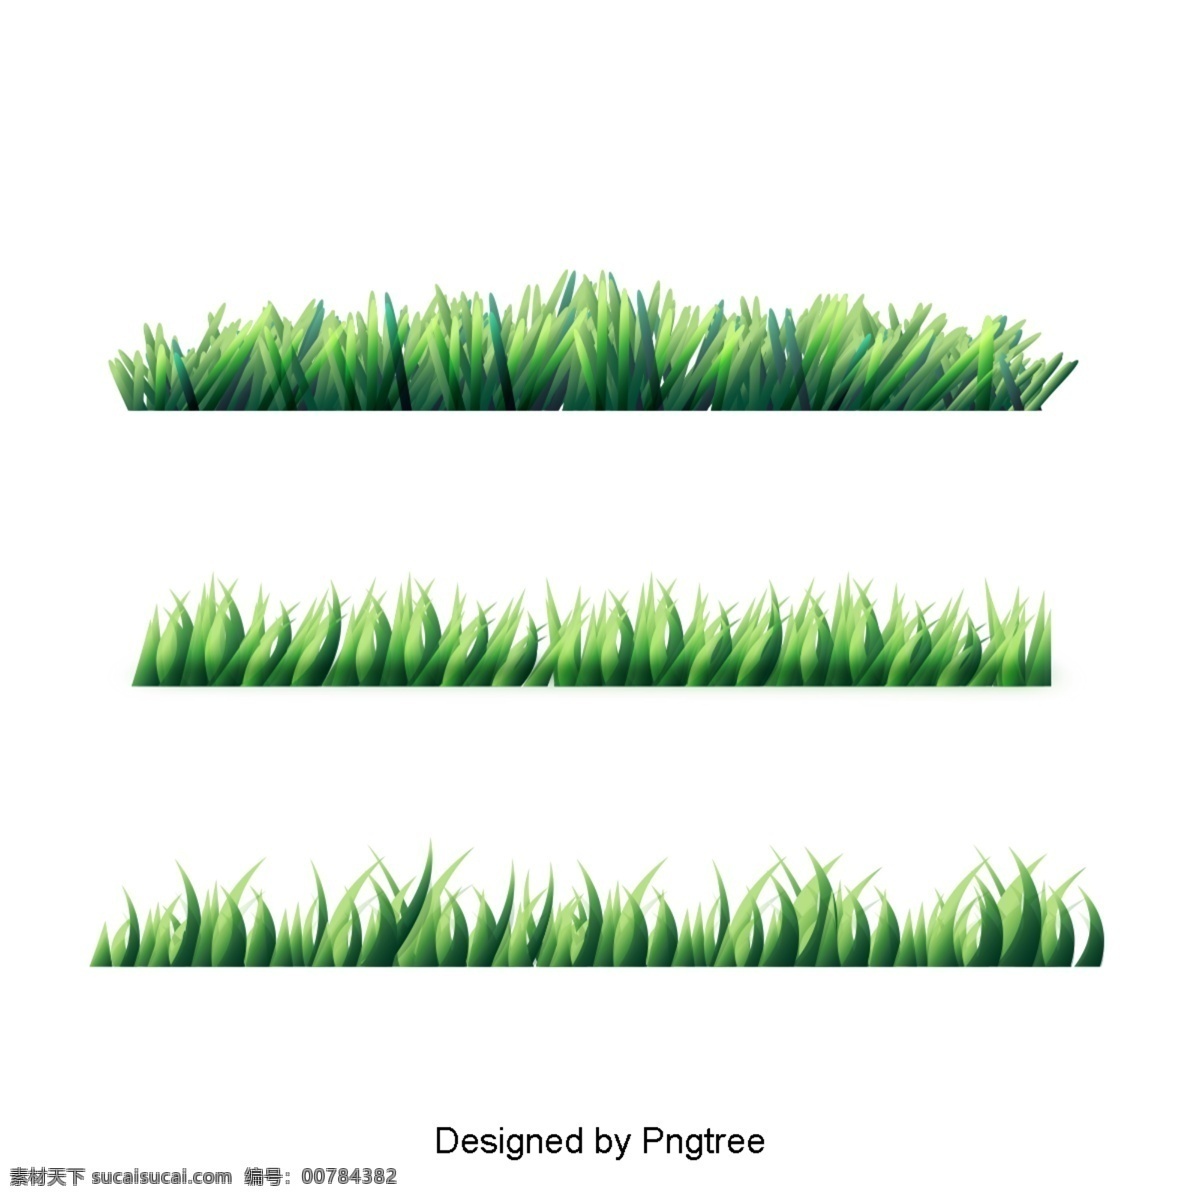 简单 天然 植物 元素 时尚 自然 绿色植物 草地 创意 图案 叶子